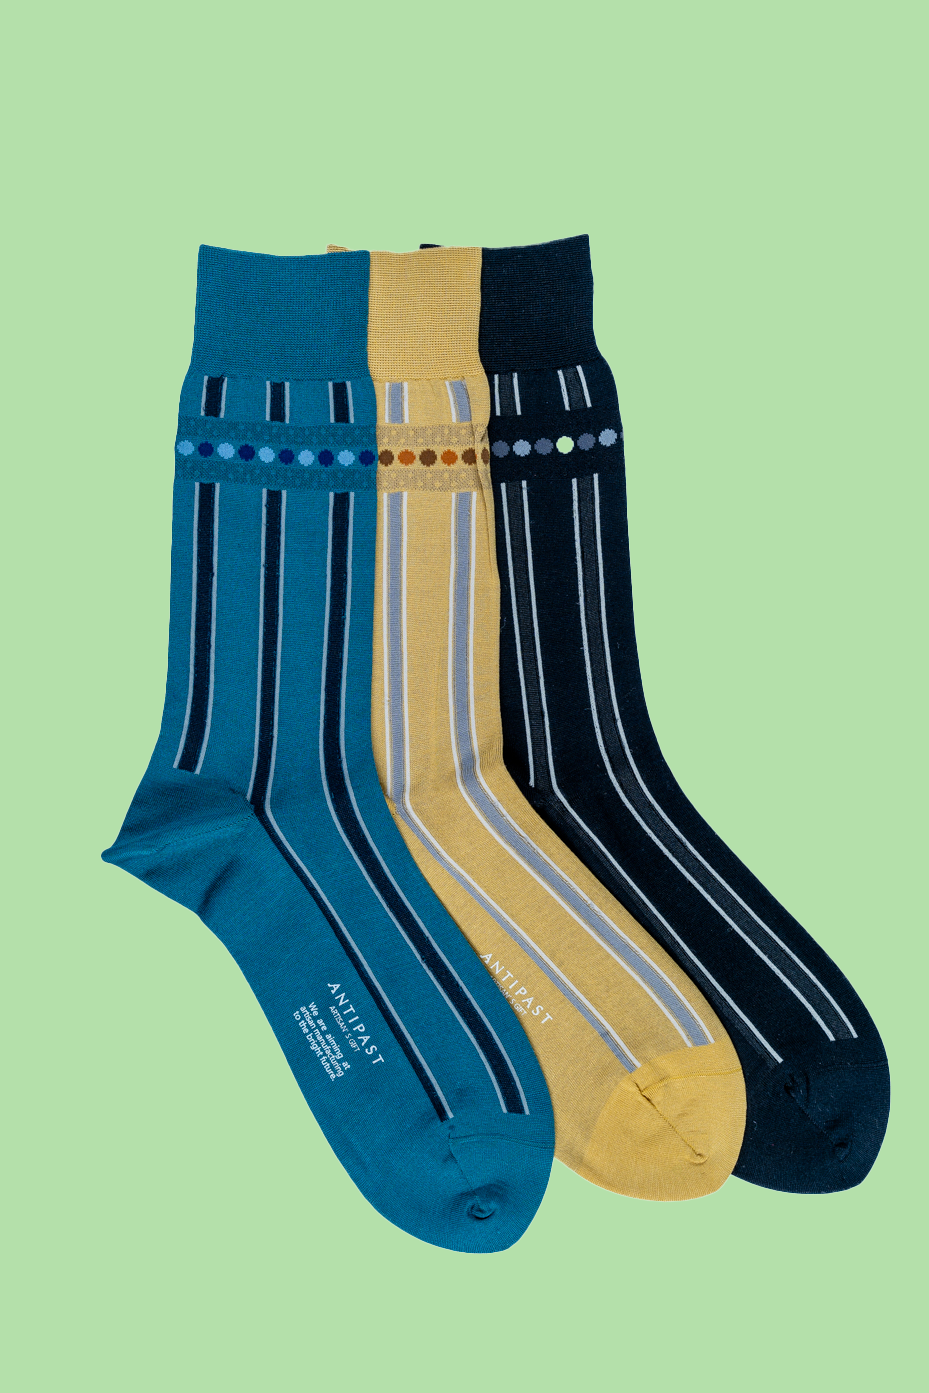 Antipast Men's Alternate Stripe Socks